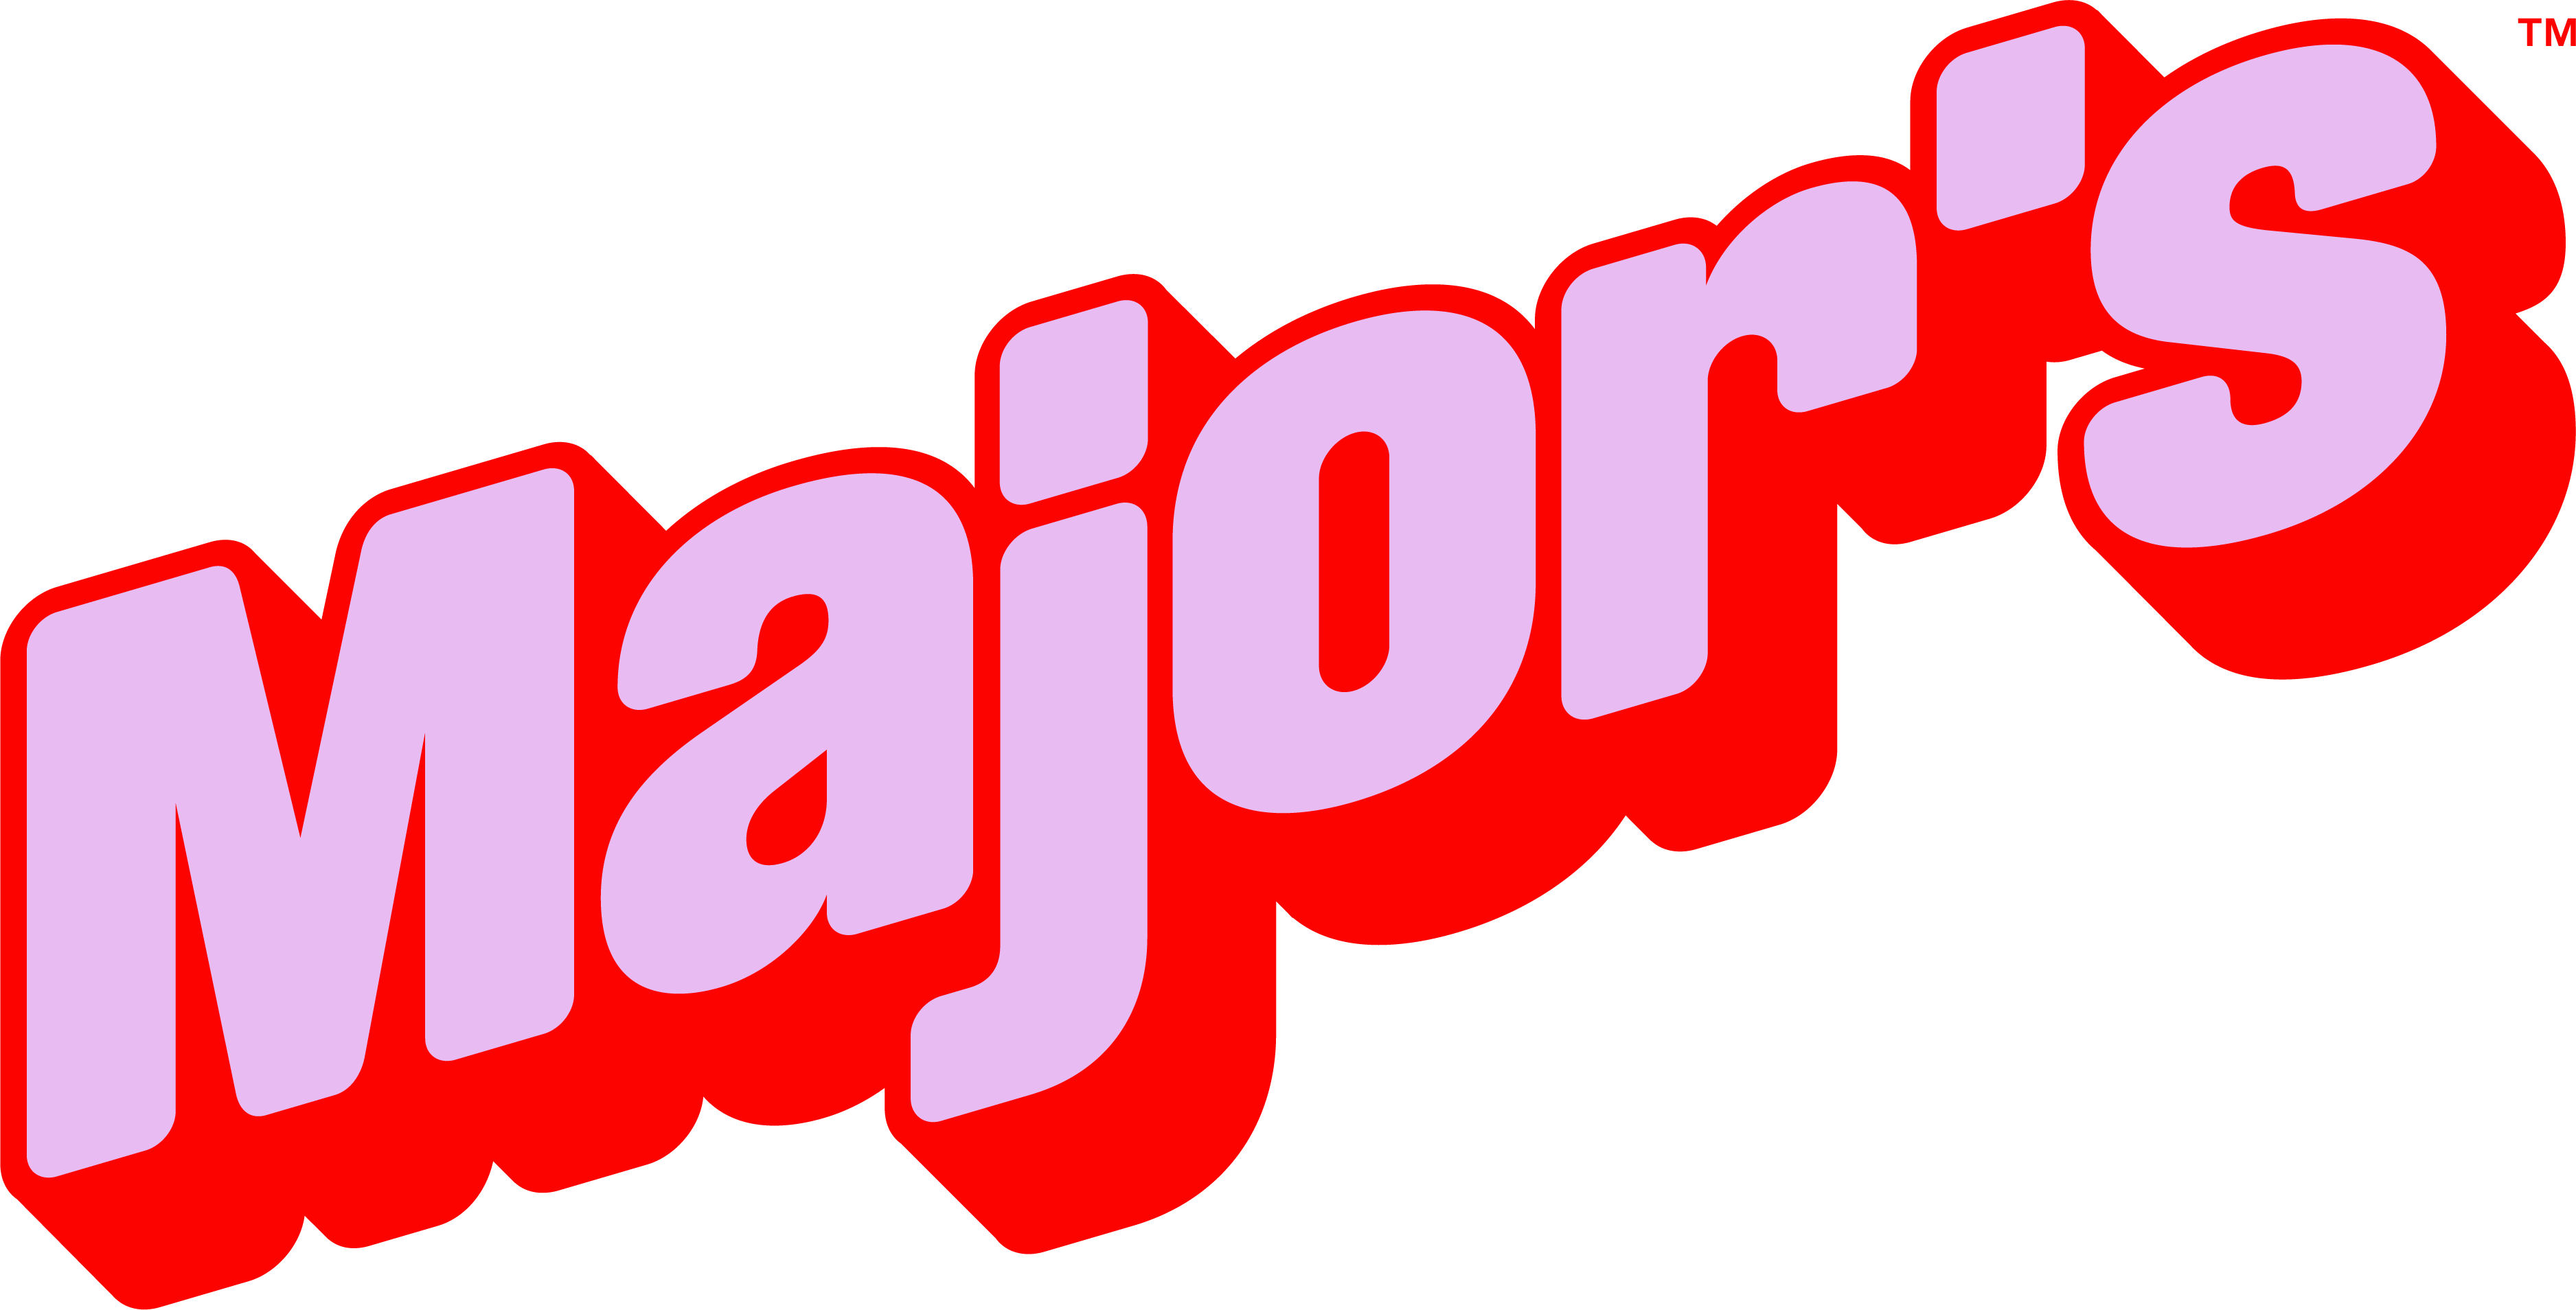 Major’s Cookies logo